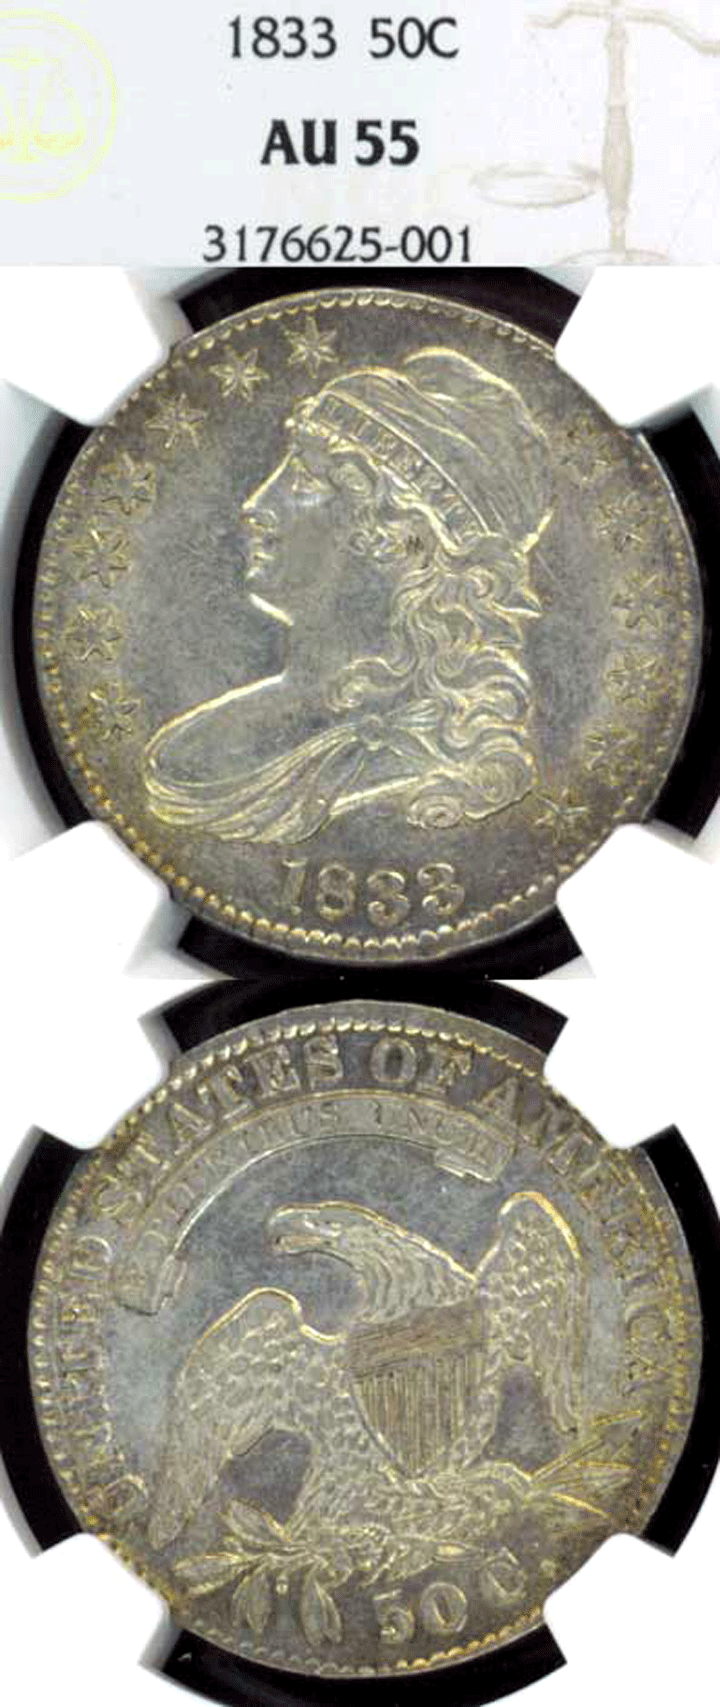 1833 50c US silver half dollar